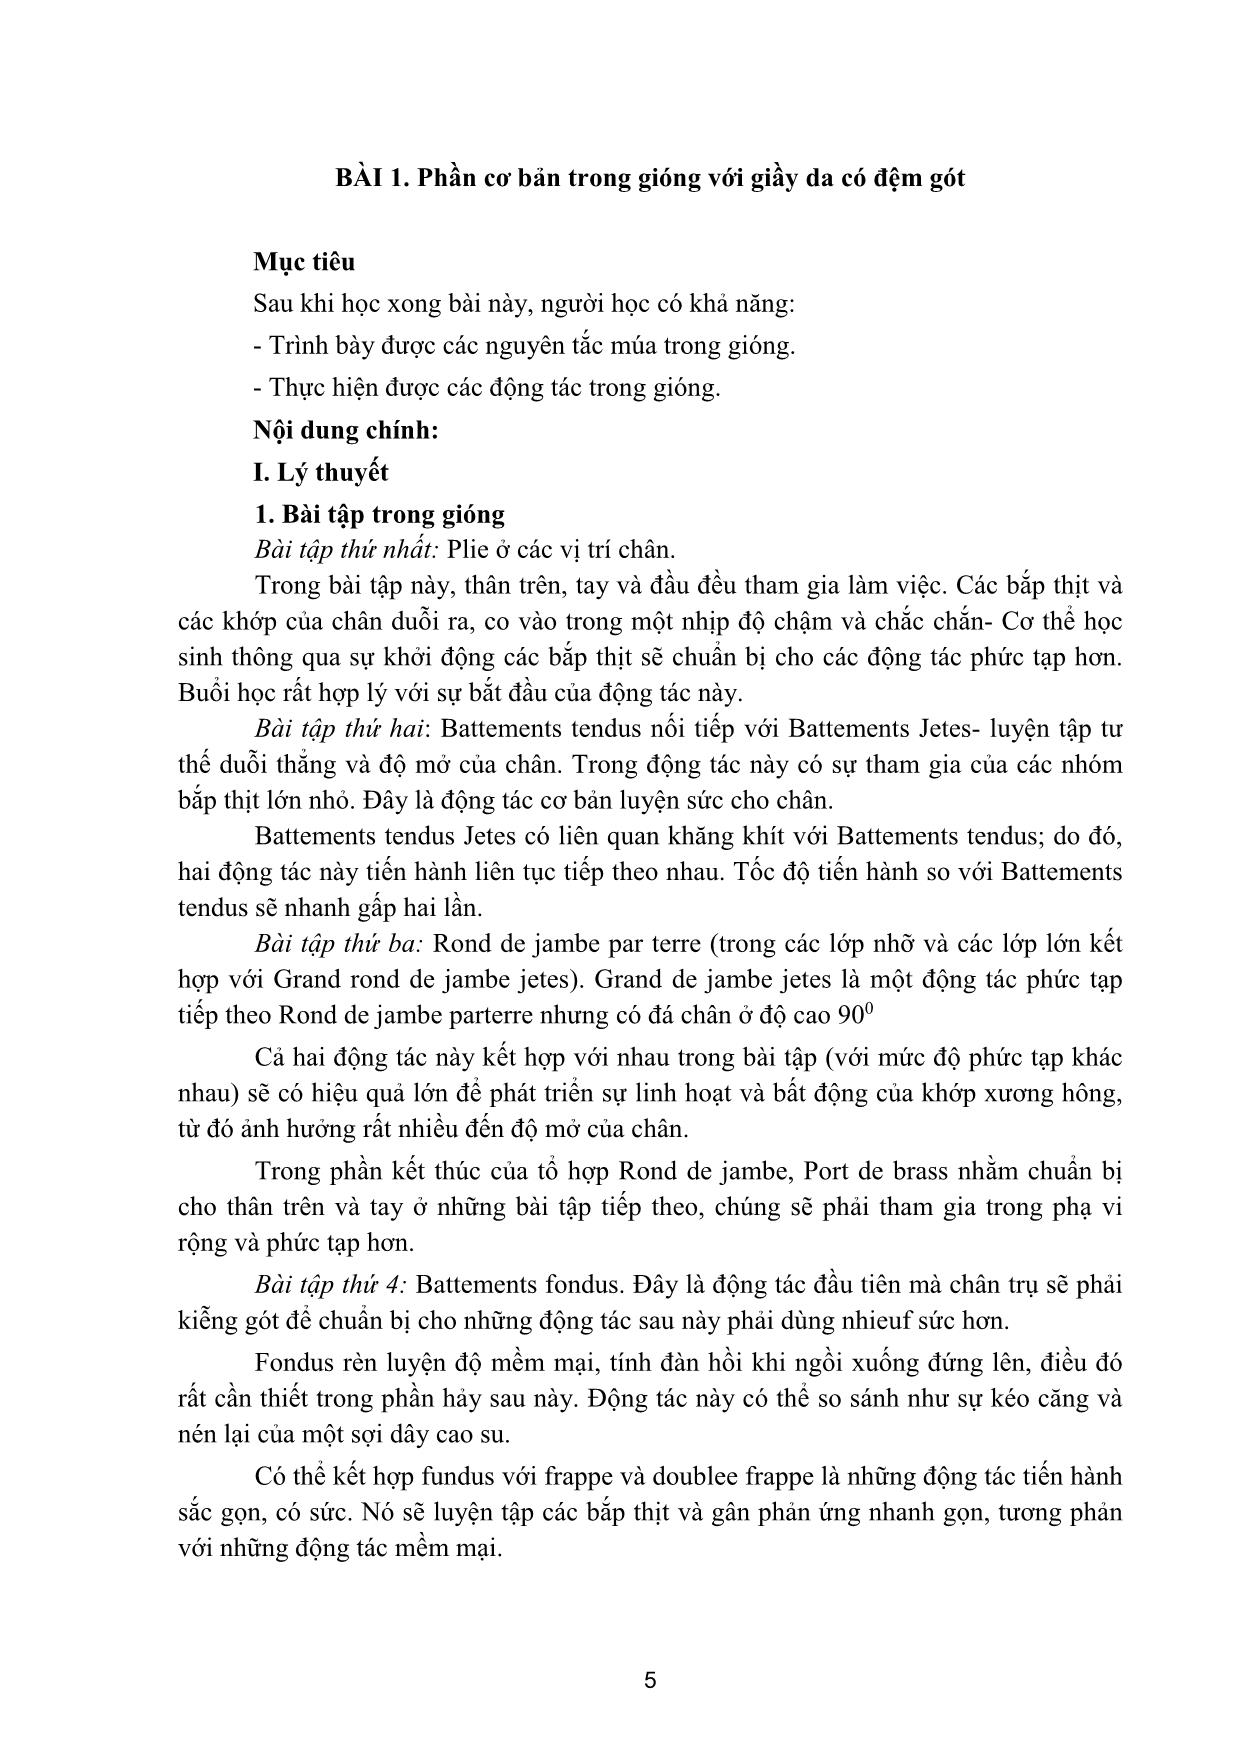 Giáo trình Múa tính cách trang 4